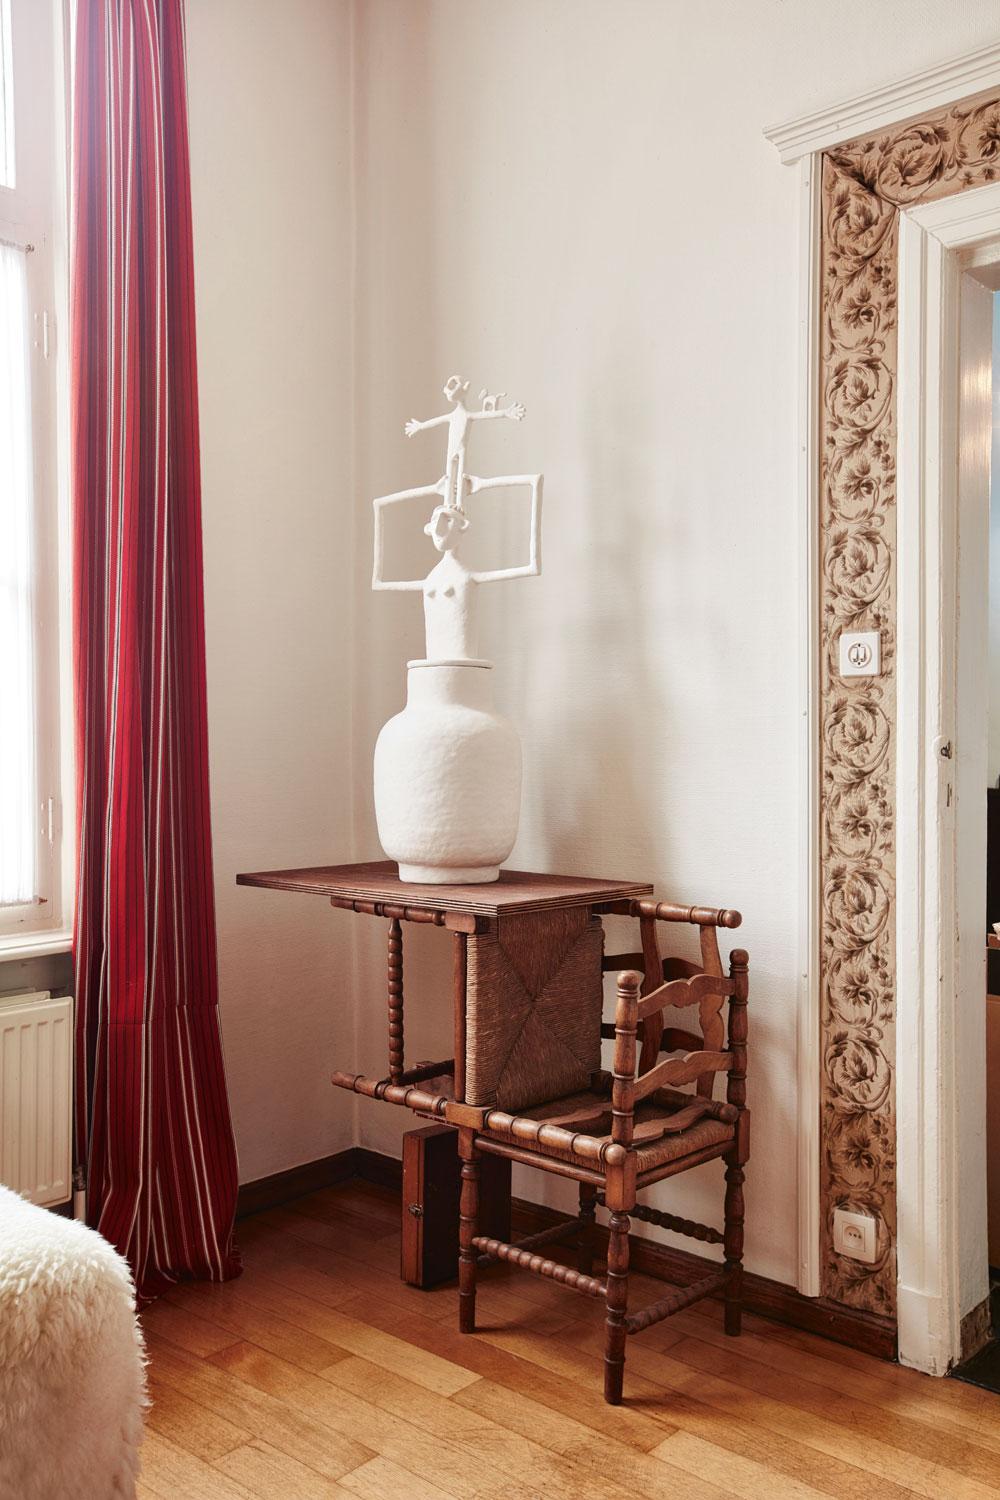 Une installation faite de chaises de la grand-mère de Walter, d'une céramique blanche de Dirk et d'un coffret de son père, dessinateur industriel.